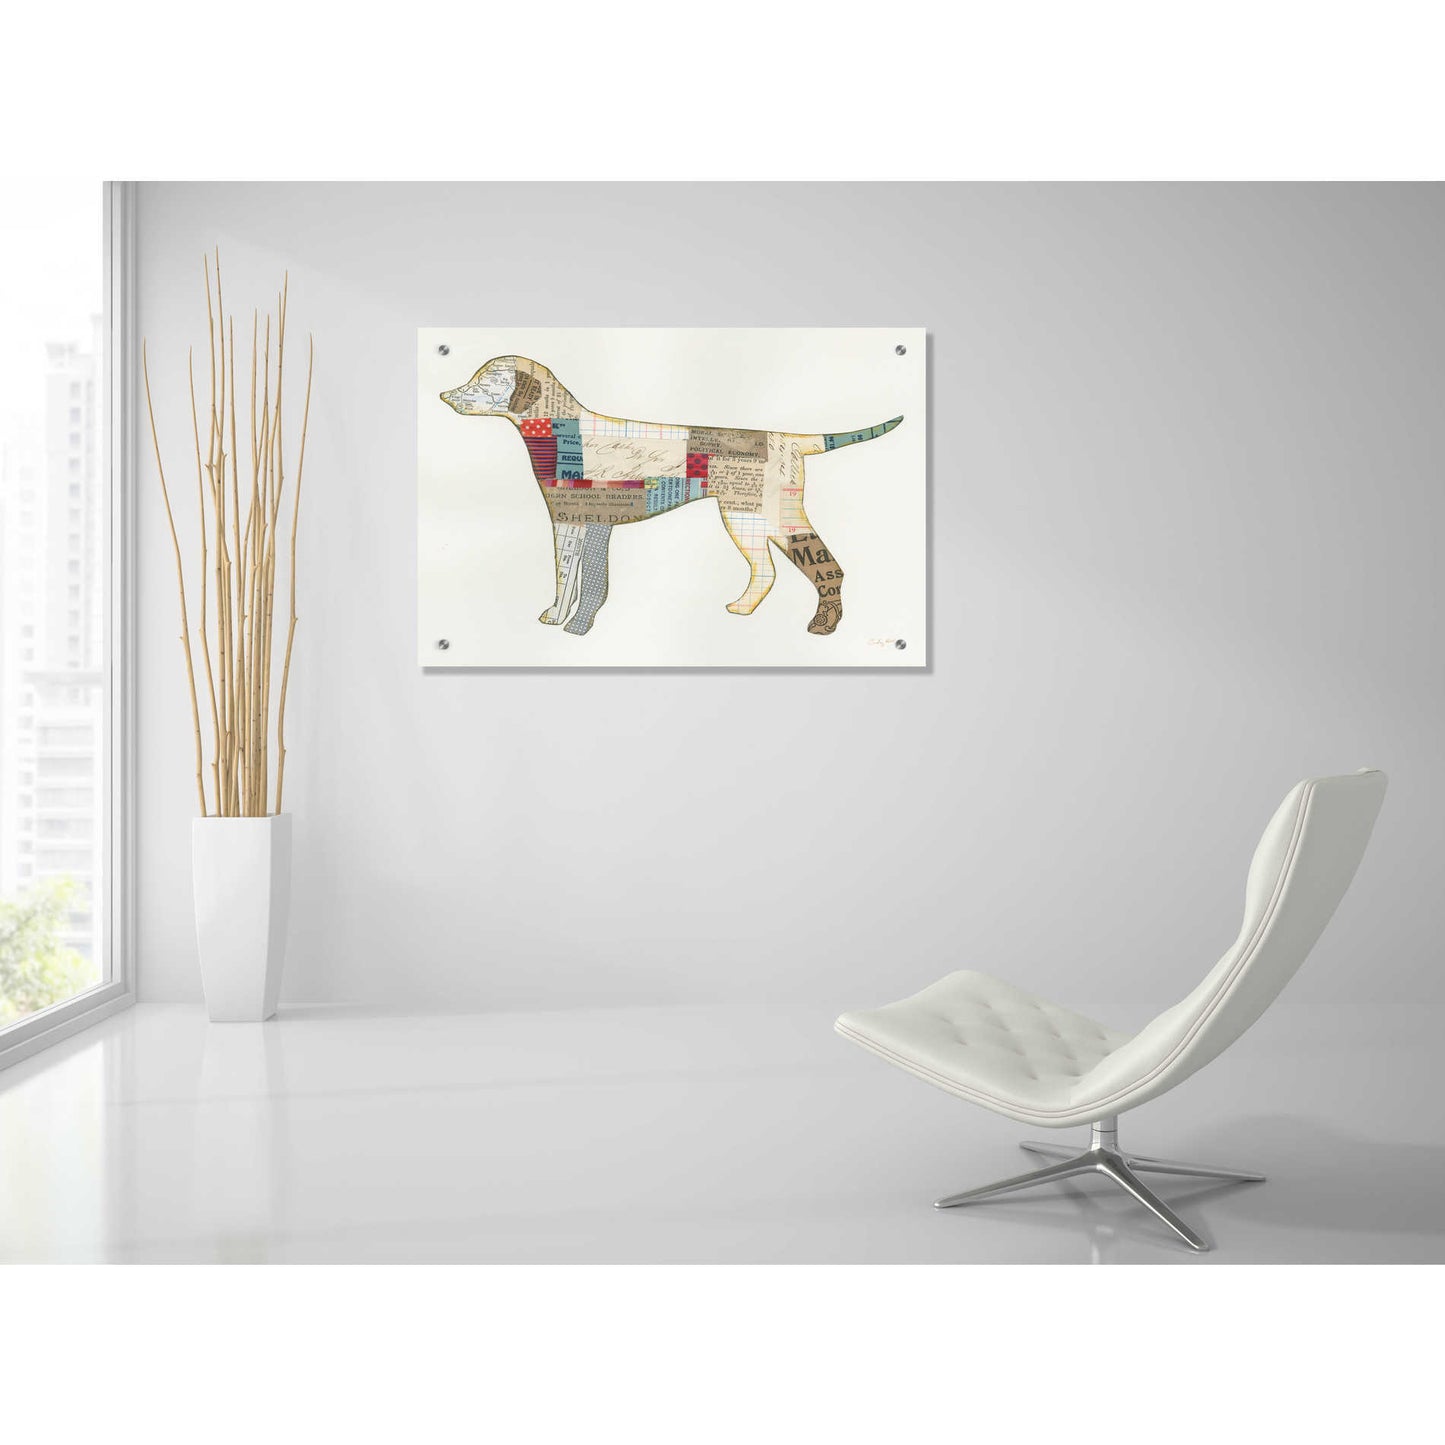 Epic Art 'Good Dog II' by Courtney Prahl, Acrylic Glass Wall Art,36x24